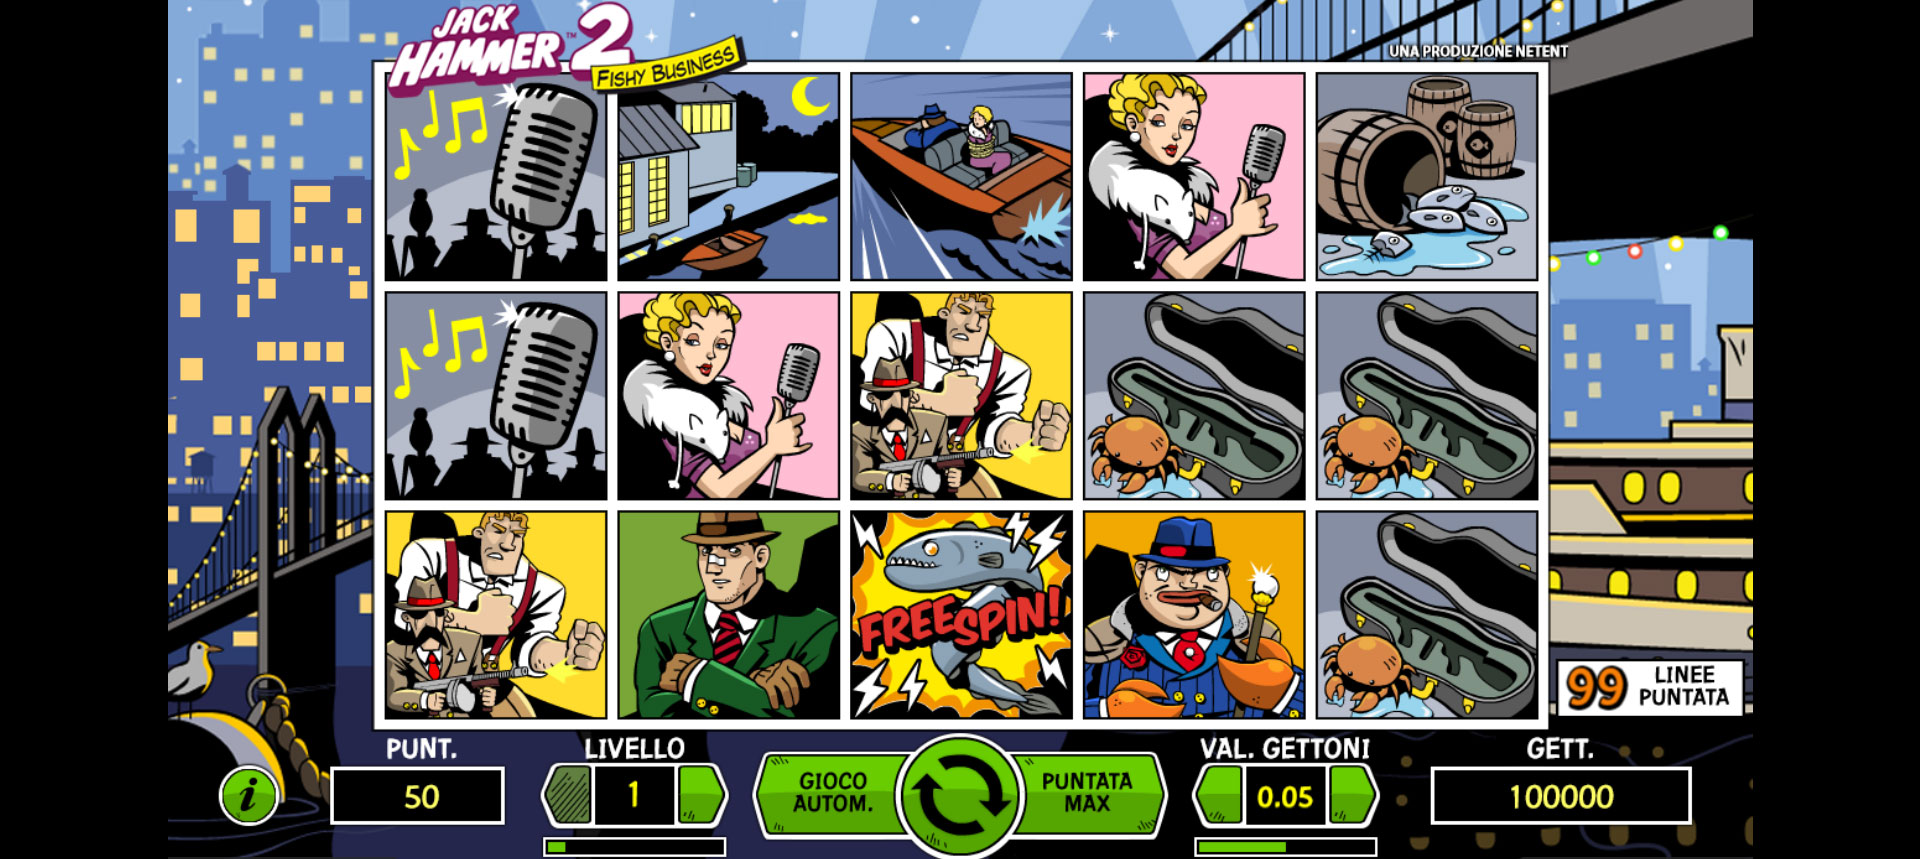 schermata di gioco della slot machine Jack Hammer 2